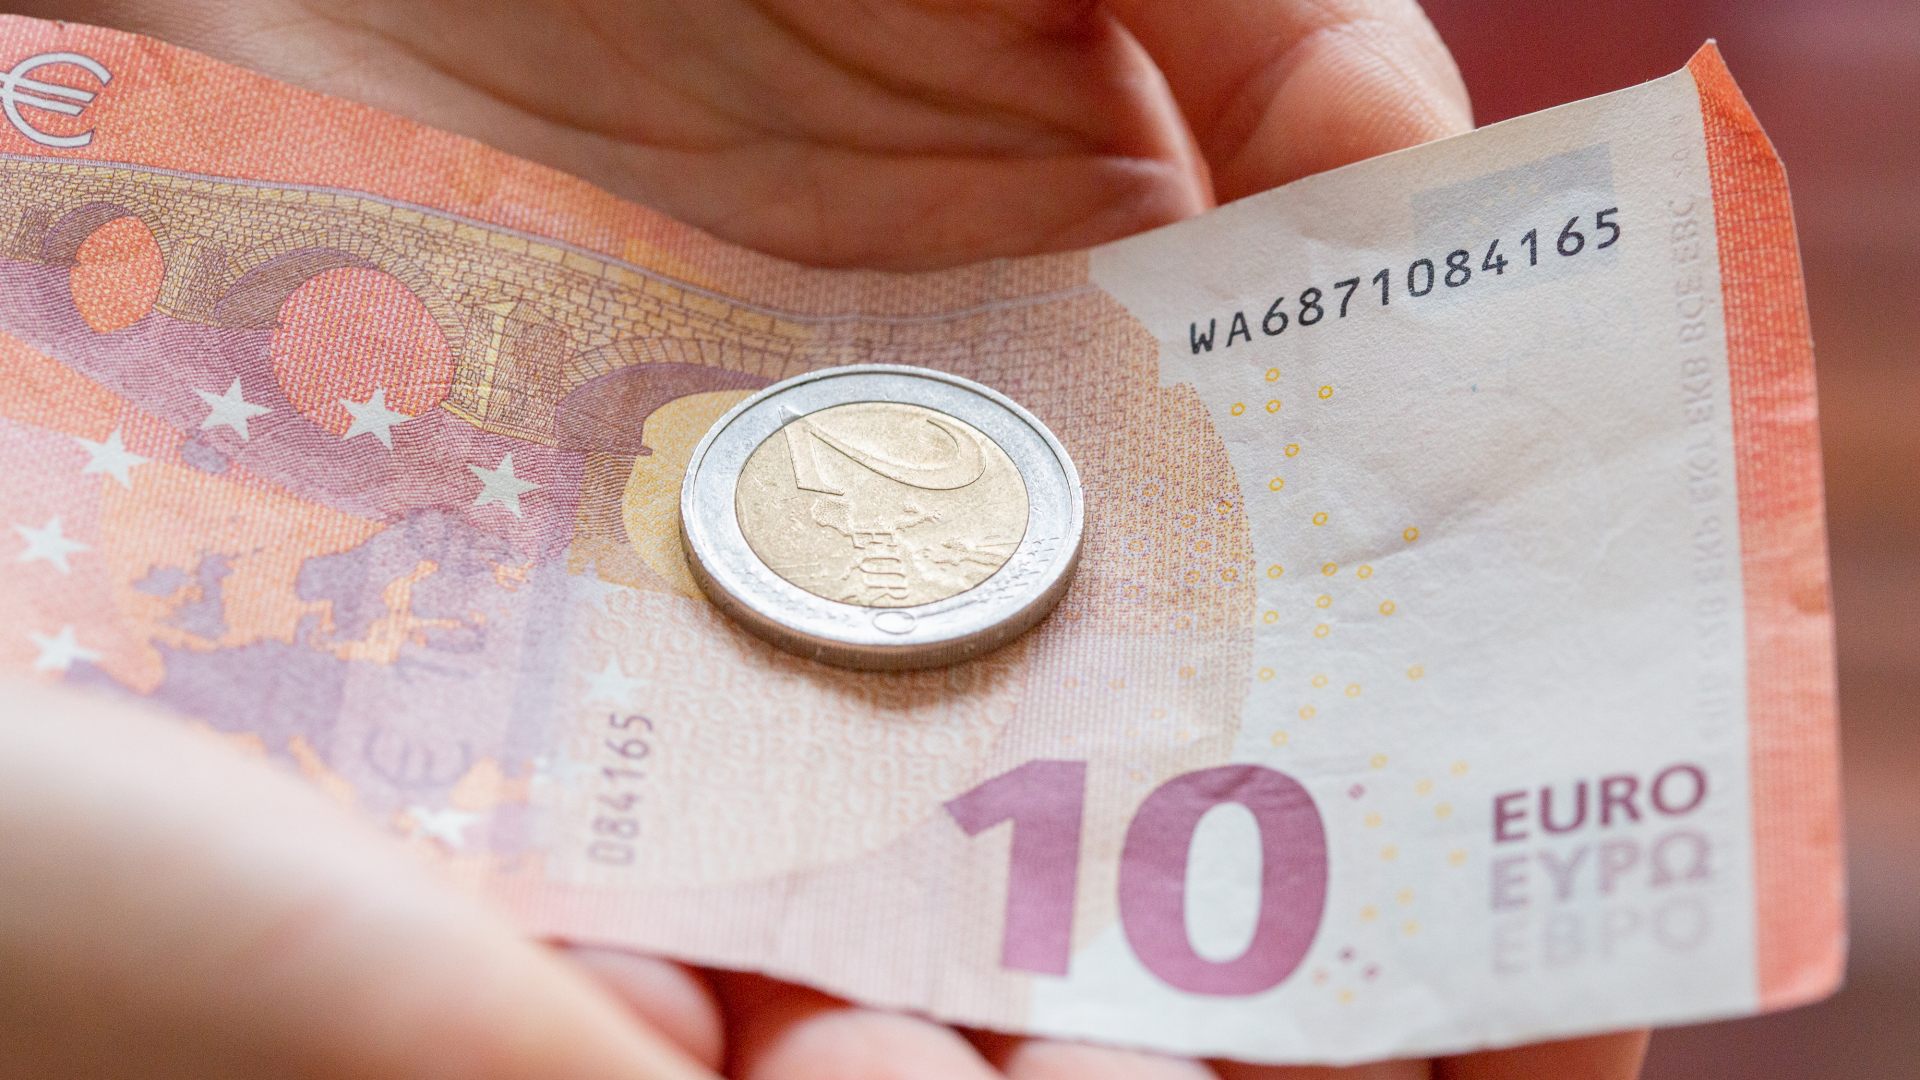 Hände halten einen 10-Euro-Schein und eine 2-Euro-Münze